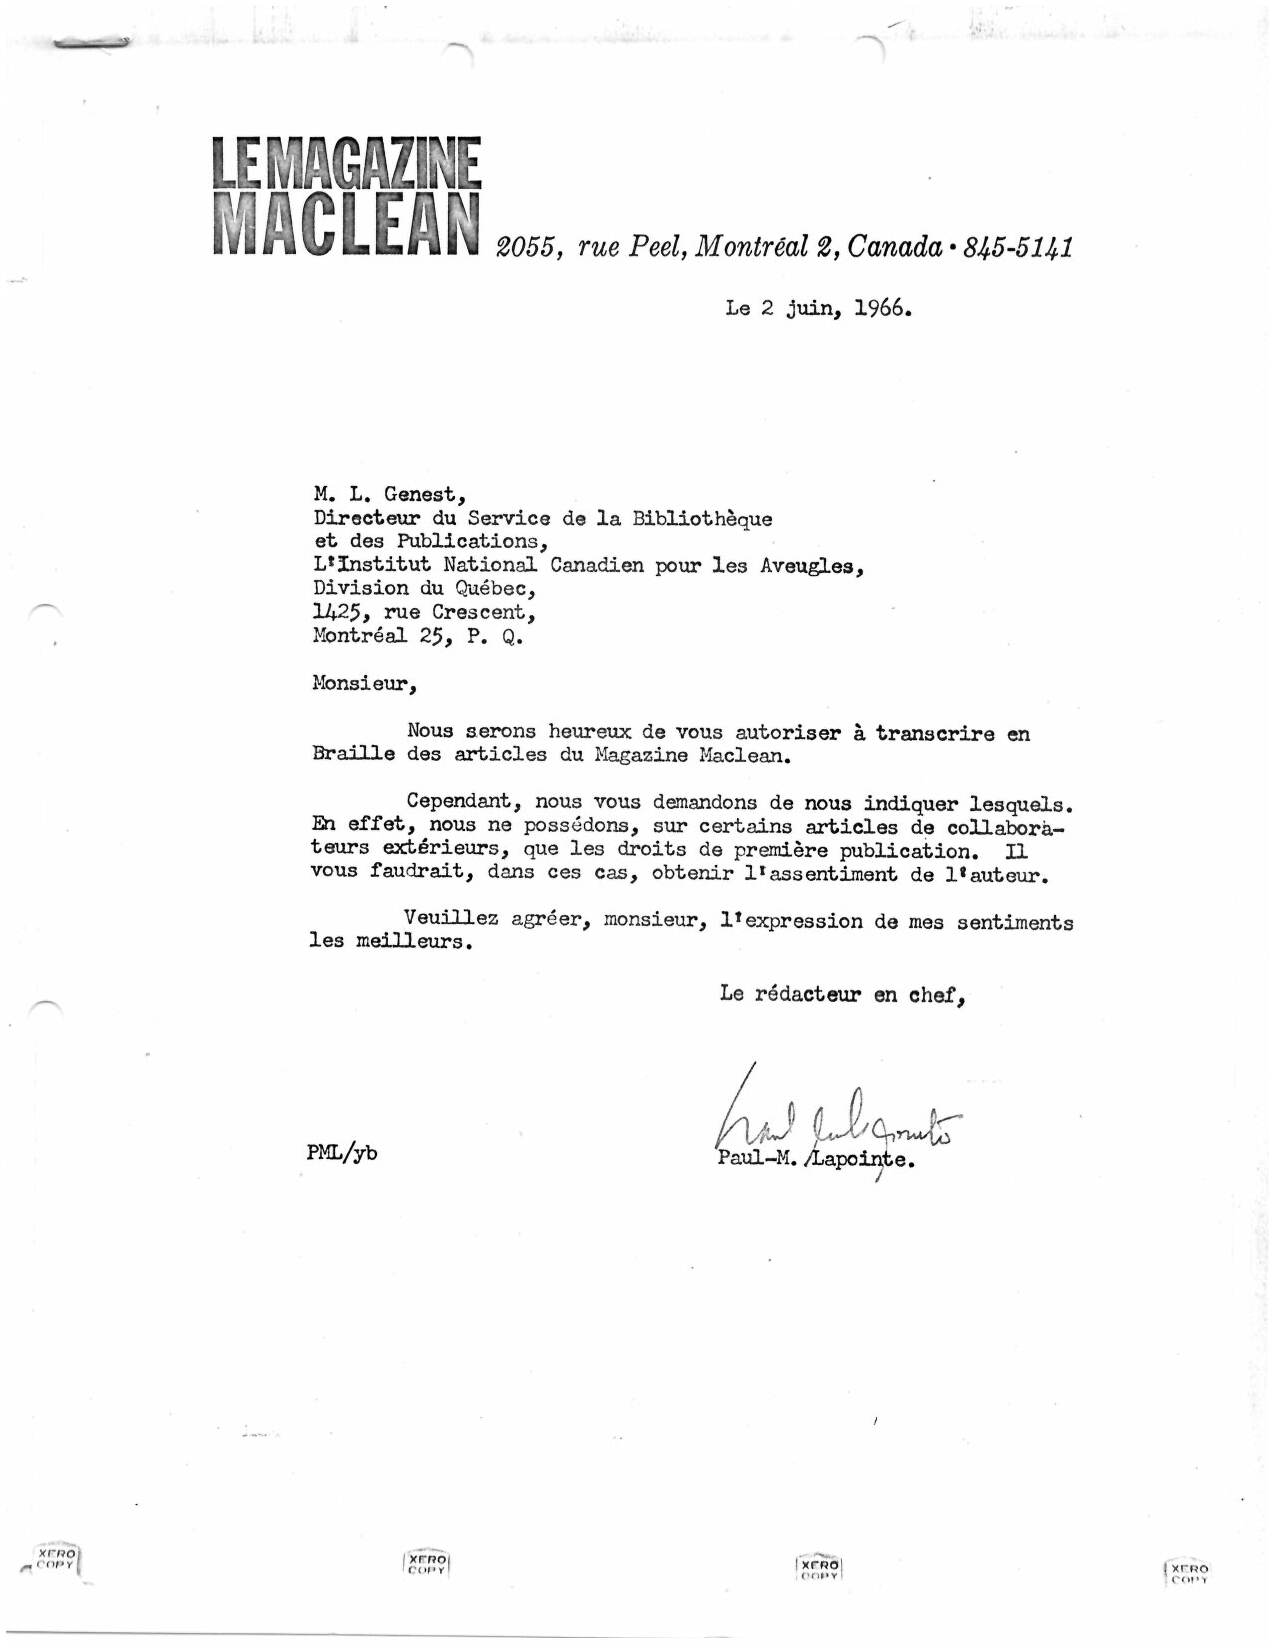 Archive de l'entente avec MacLean, datant de 1966 signé par le rédacteur en chef 